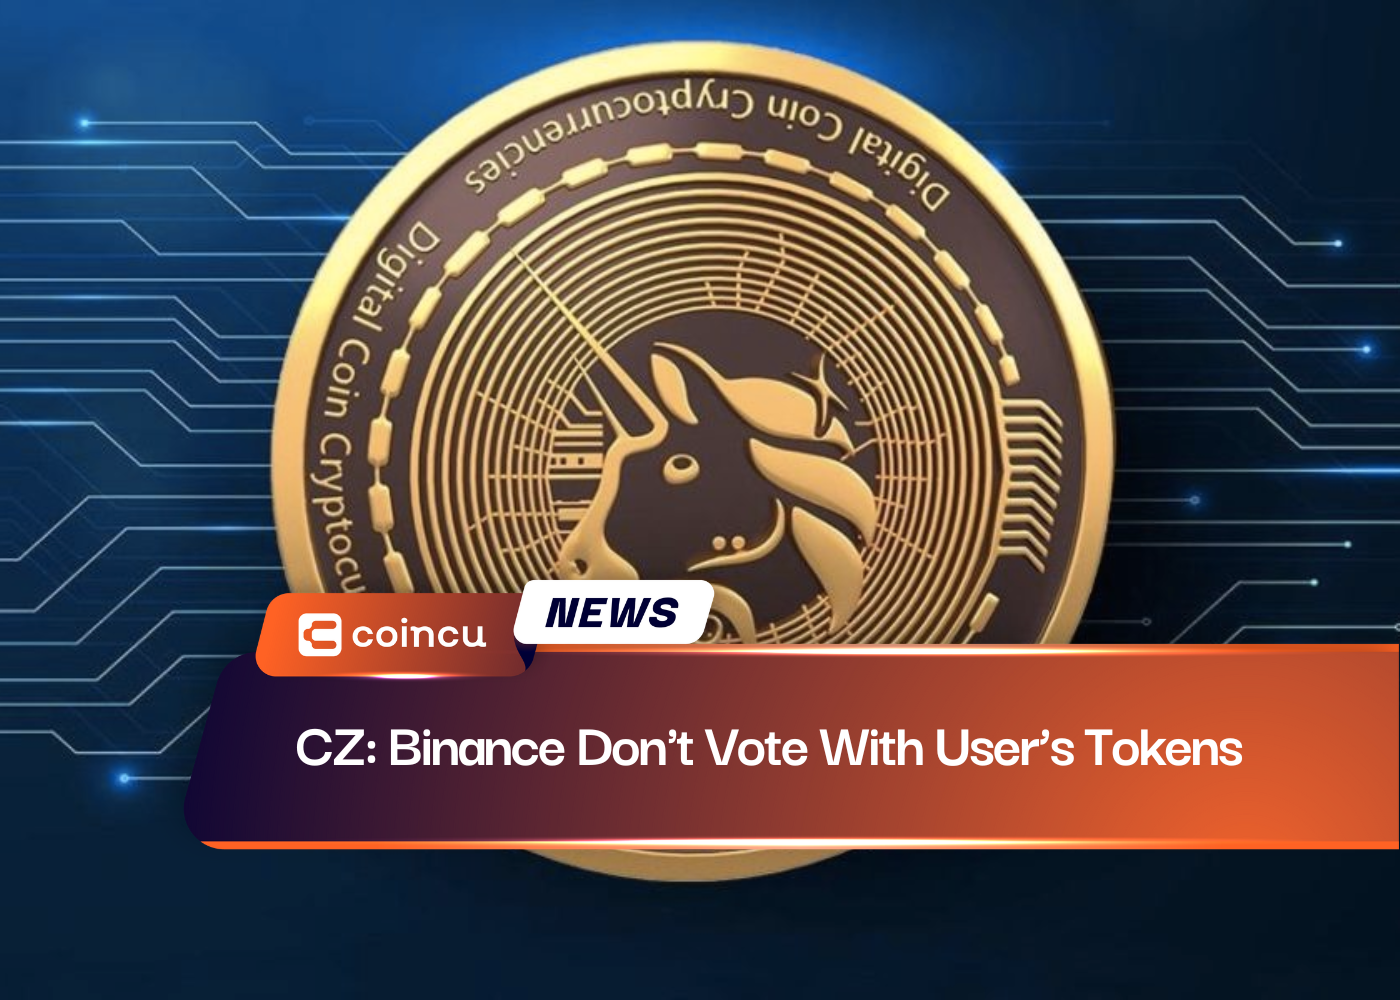 CZ: Binance Không bỏ phiếu bằng token của người dùng